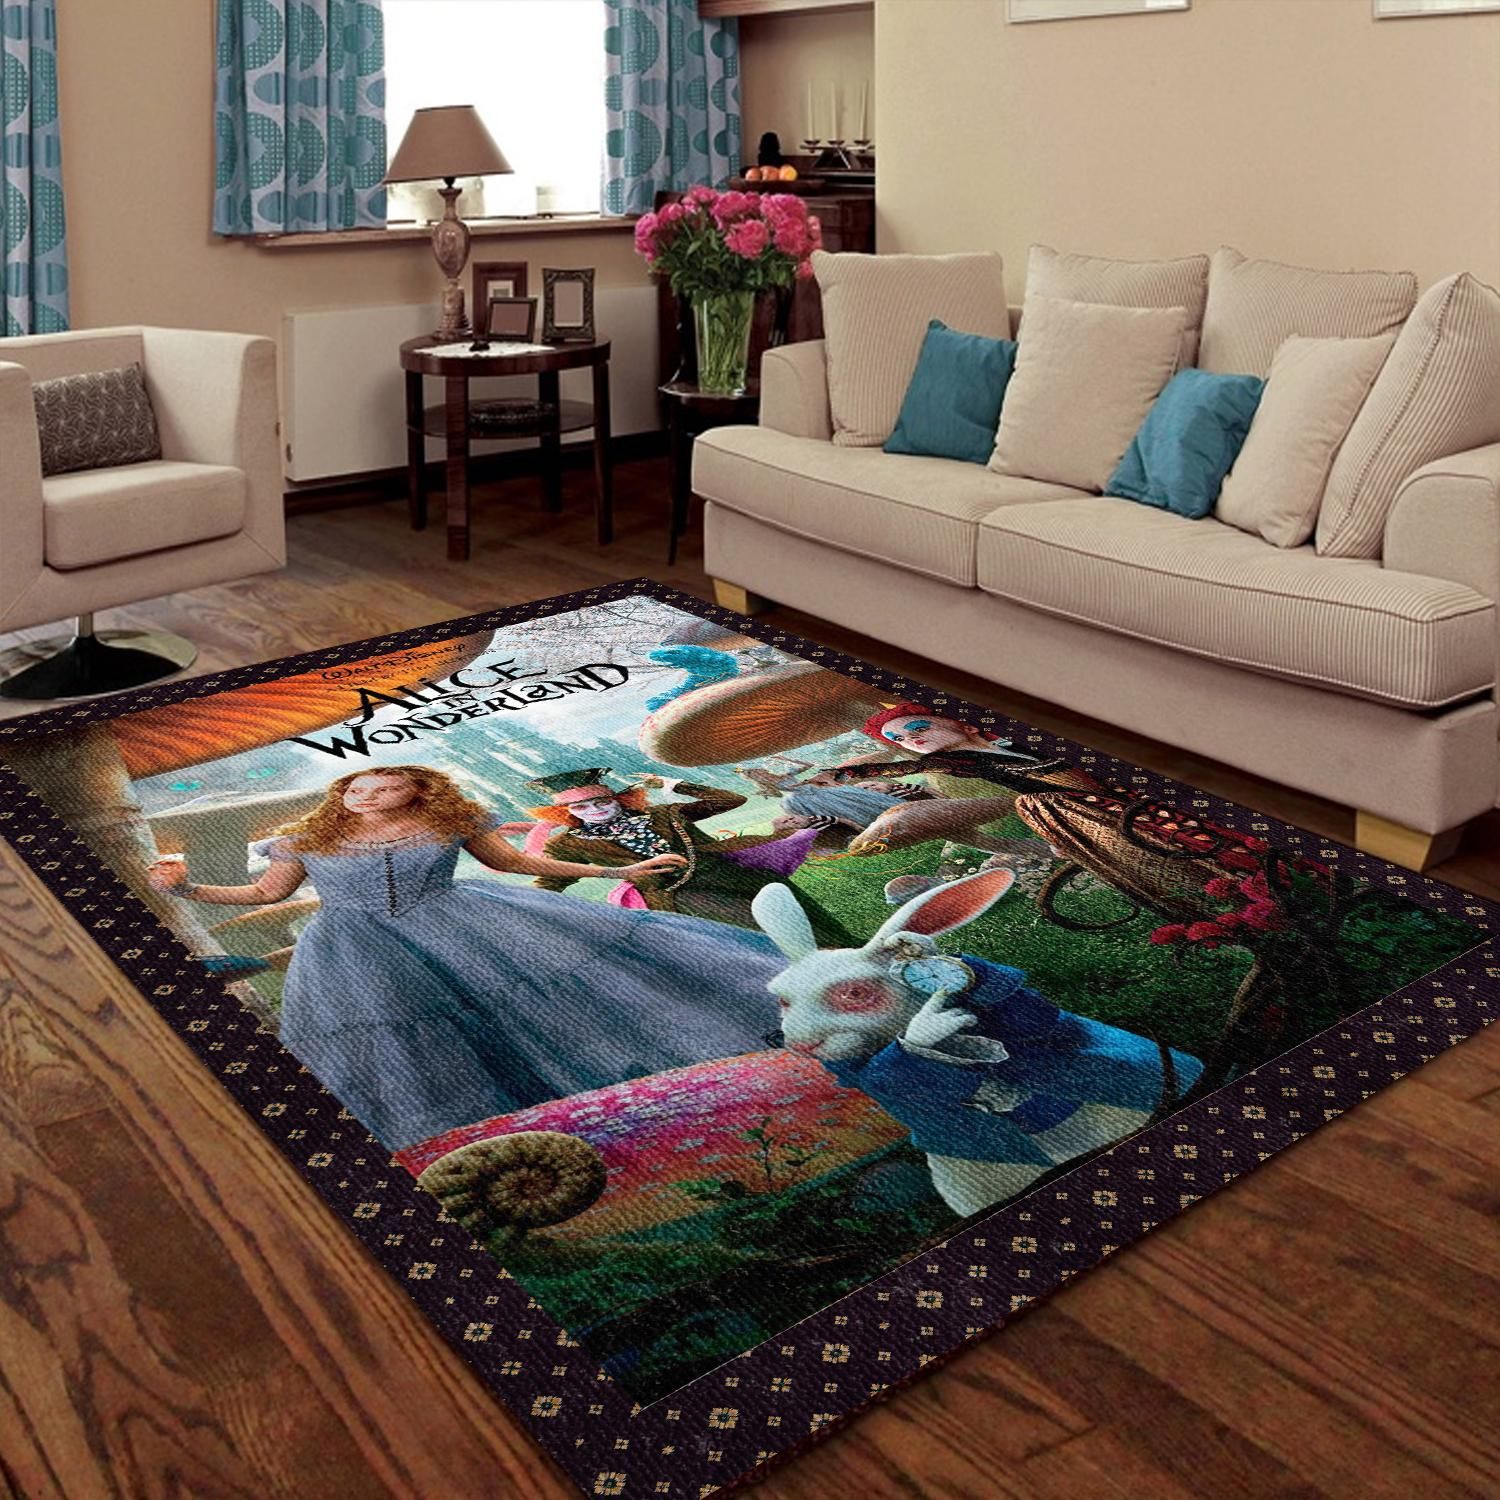 https://www.travelsintranslation.com/wp-content/uploads/2021/03/Alice-In-The-Wonderland-Poster-Disney-Mad-Hatter-Colorful-Living-Room-Area-Rug-Carpet-Kitchen-Rug-US-Gift-Decor.jpg